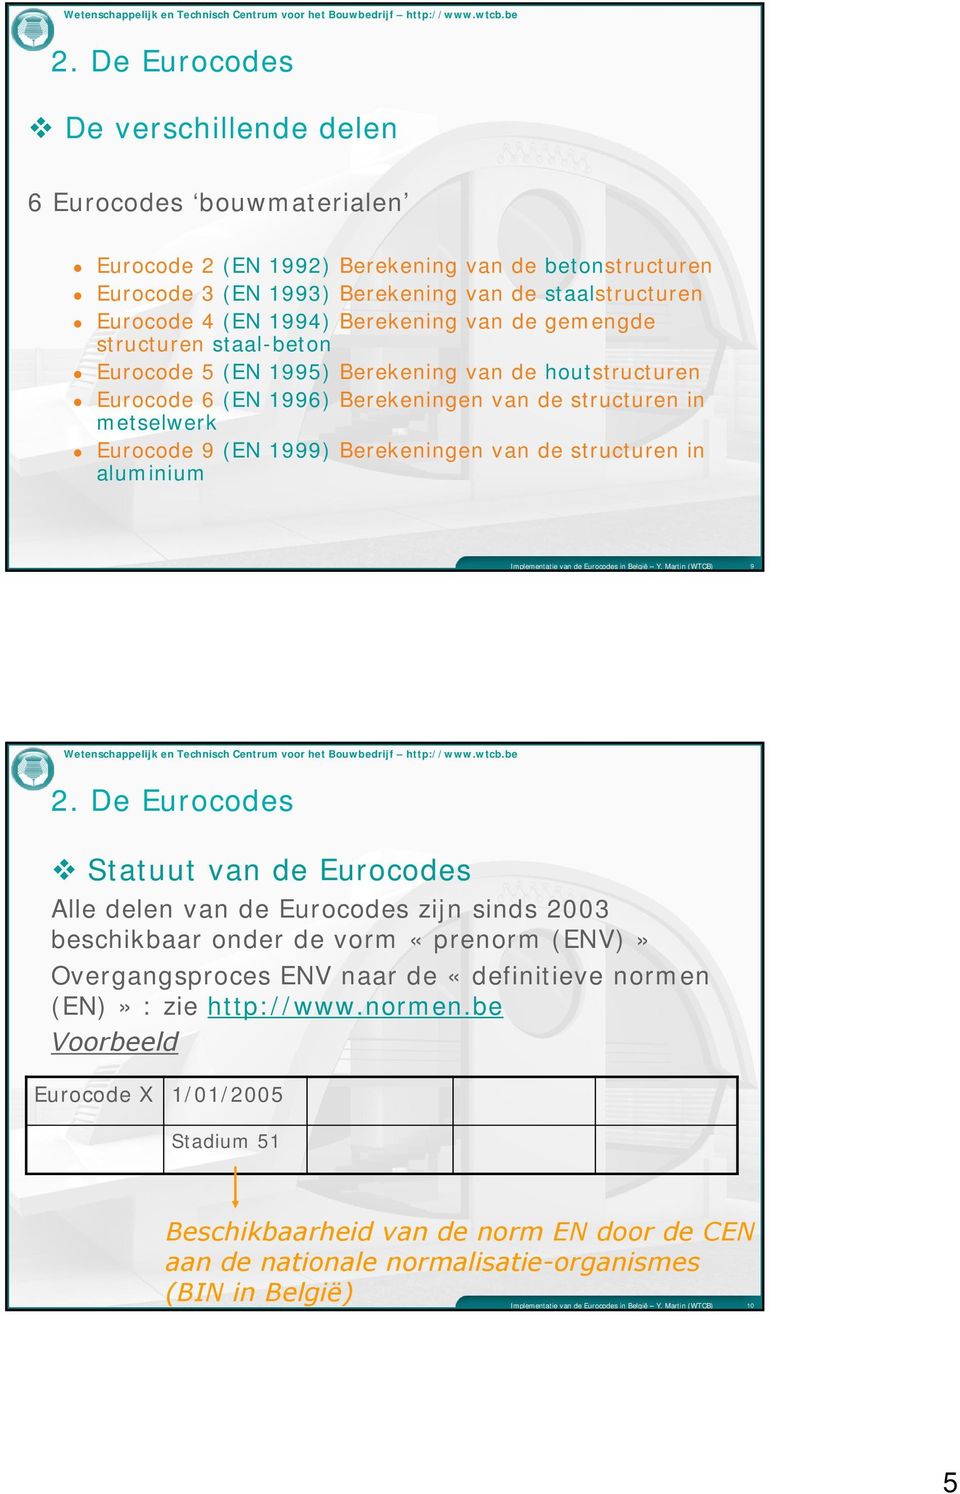 1999) Berekeningen van de structuren in aluminium 9 Statuut van de Eurocodes Alle delen van de Eurocodes zijn sinds 2003 beschikbaar onder de vorm «prenorm (ENV)» Overgangsproces ENV naar